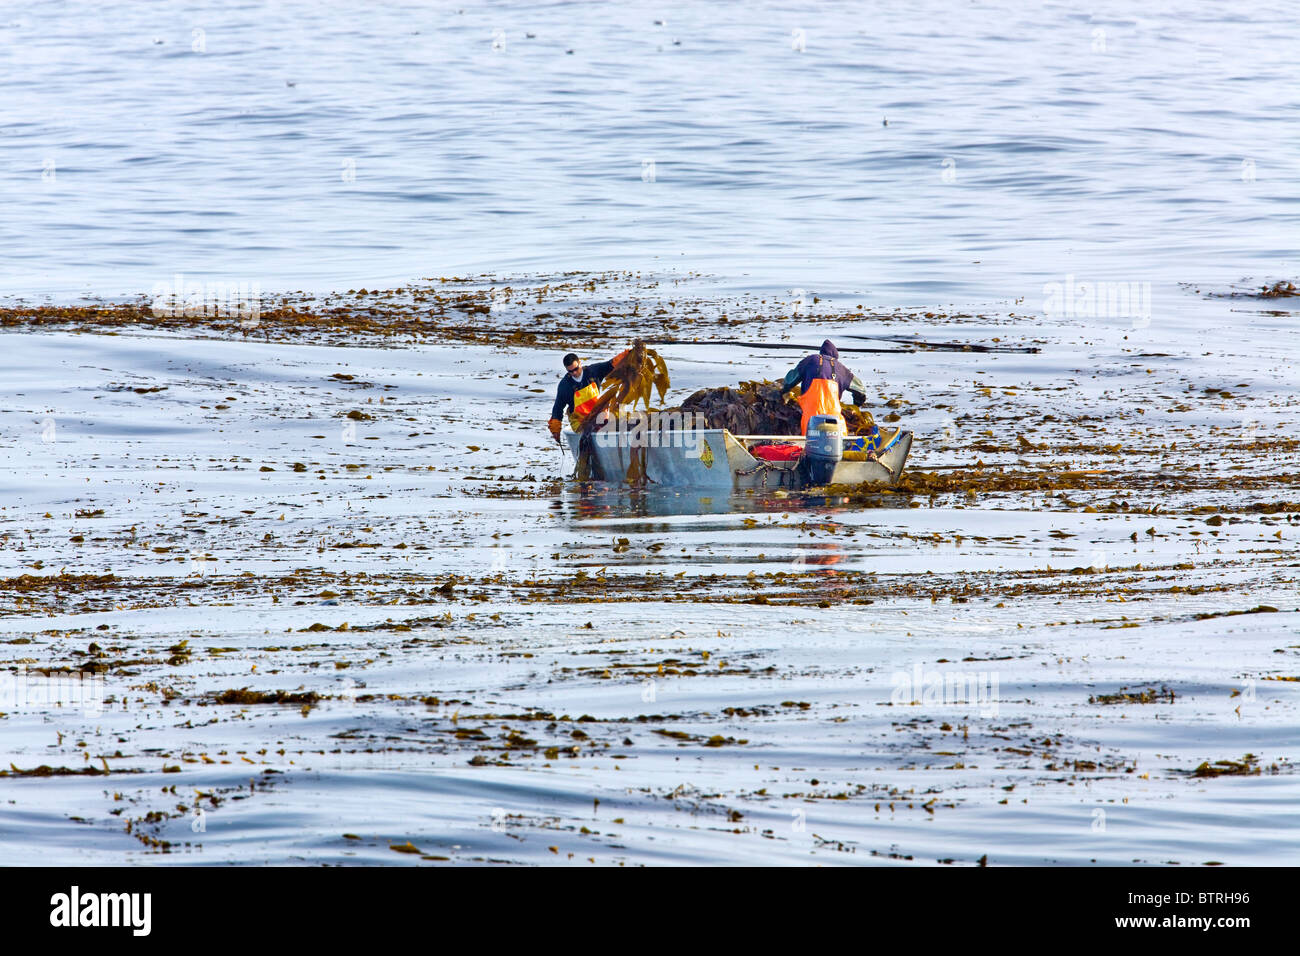 Kelp harvesting in Monterey Bay, California. Stock Photo